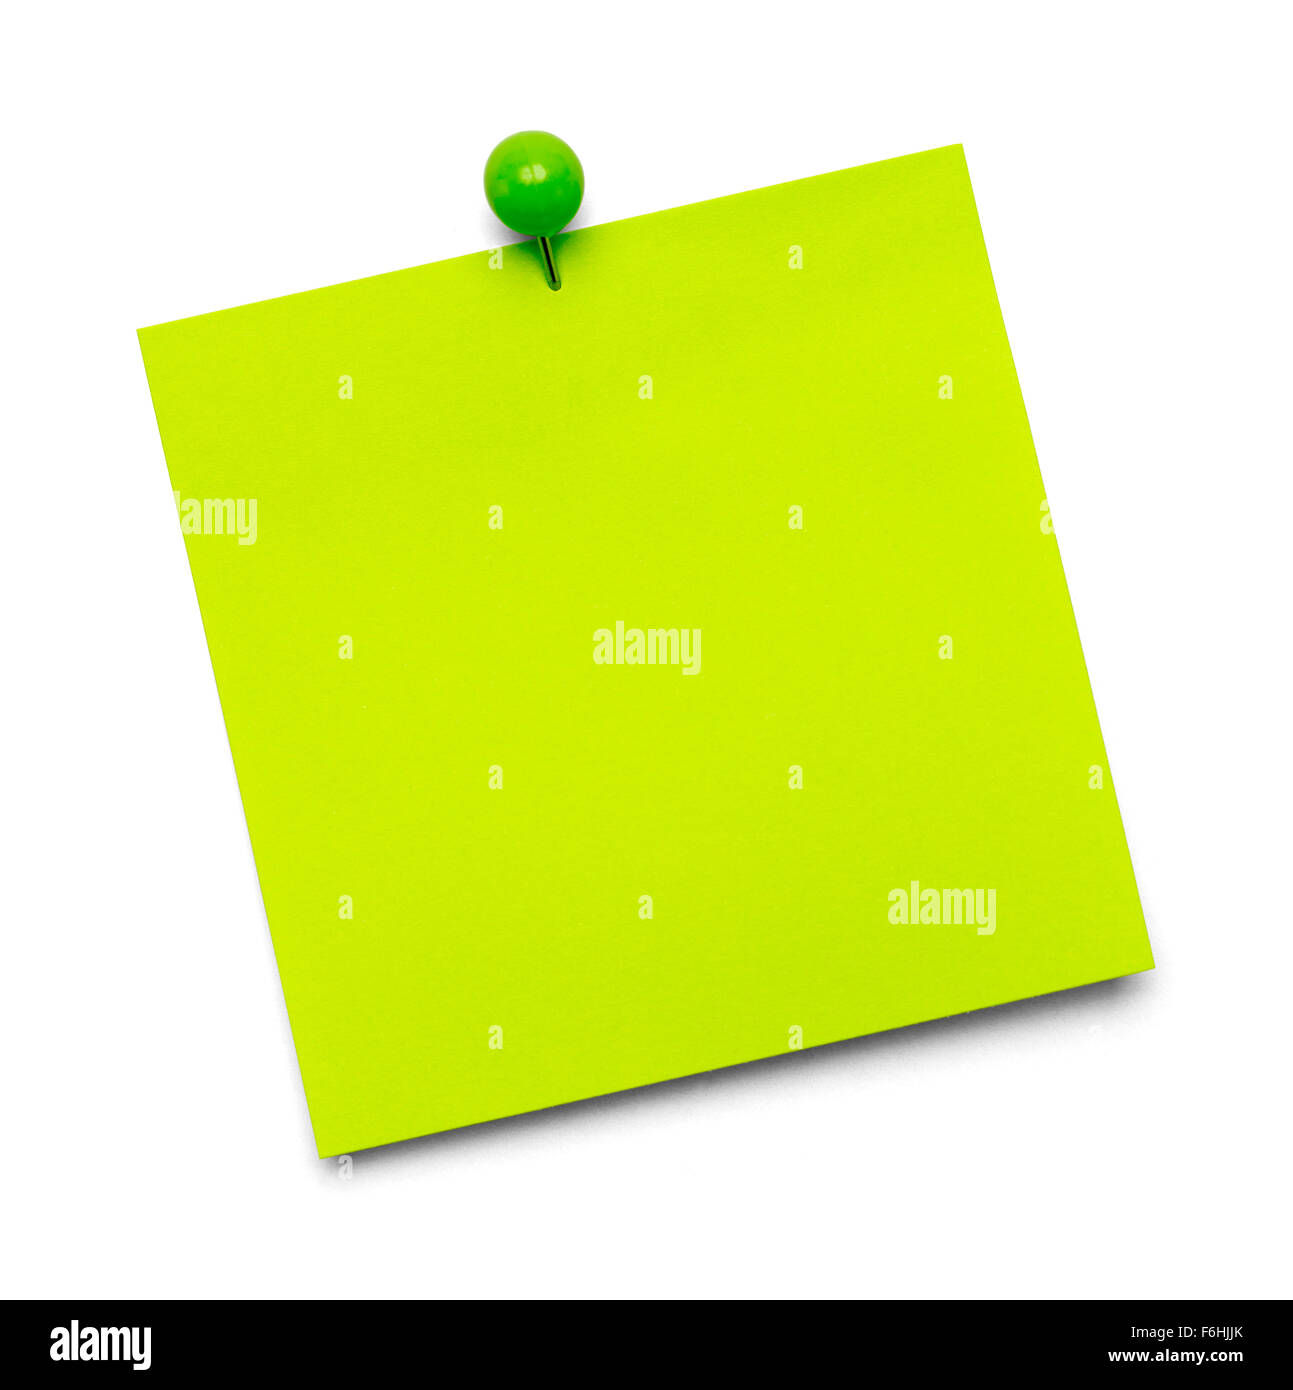 Grünes Papier-Schuldbrief mit textfreiraum und Tack, Isolated on White Background. Stockfoto